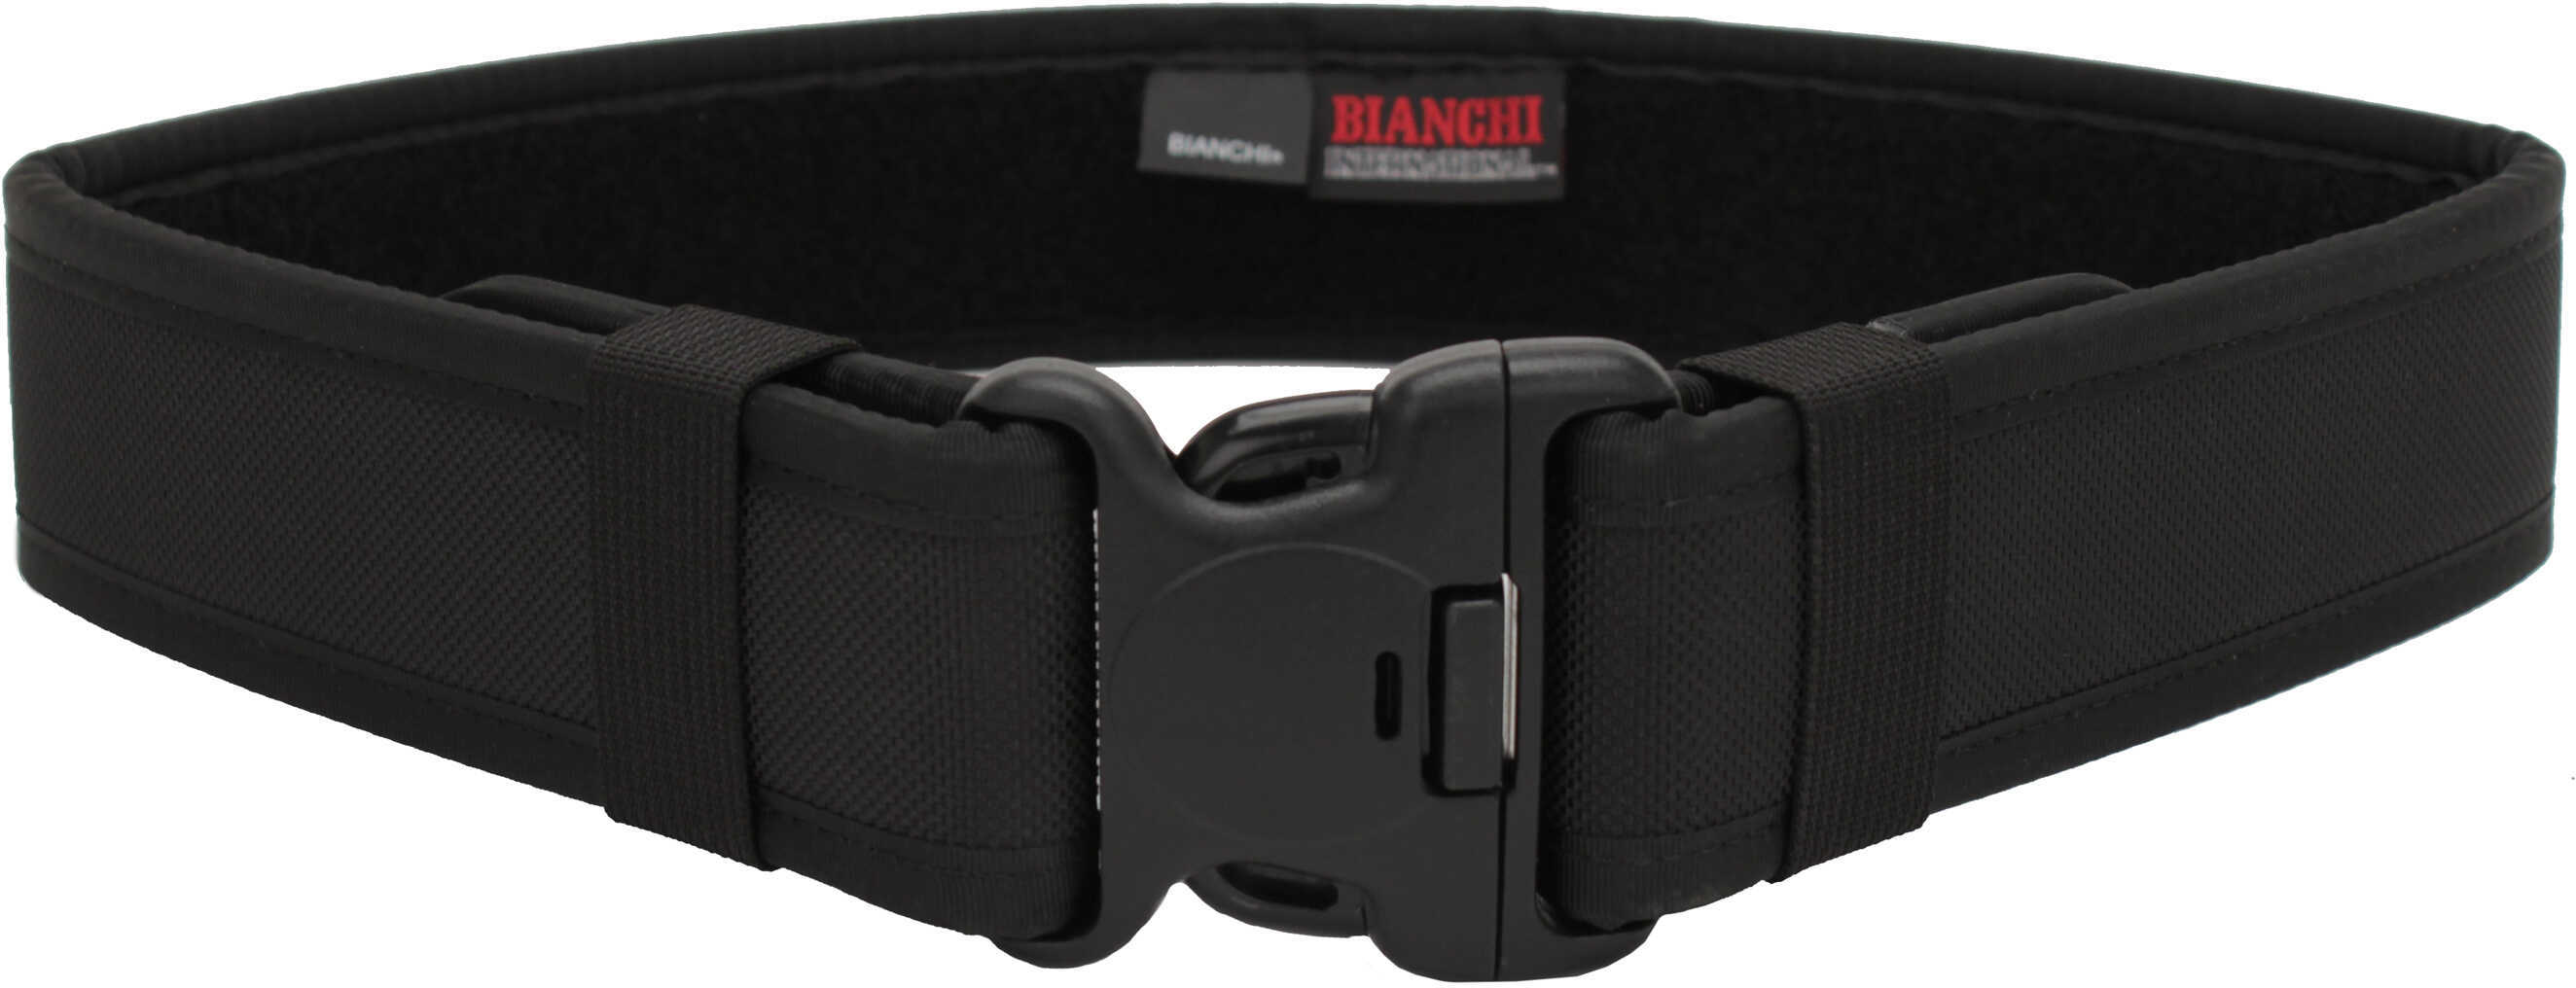 Bianchi Model 7200 Duty Belt 2.25" 40-46" Large Nylon Black Finish 17382